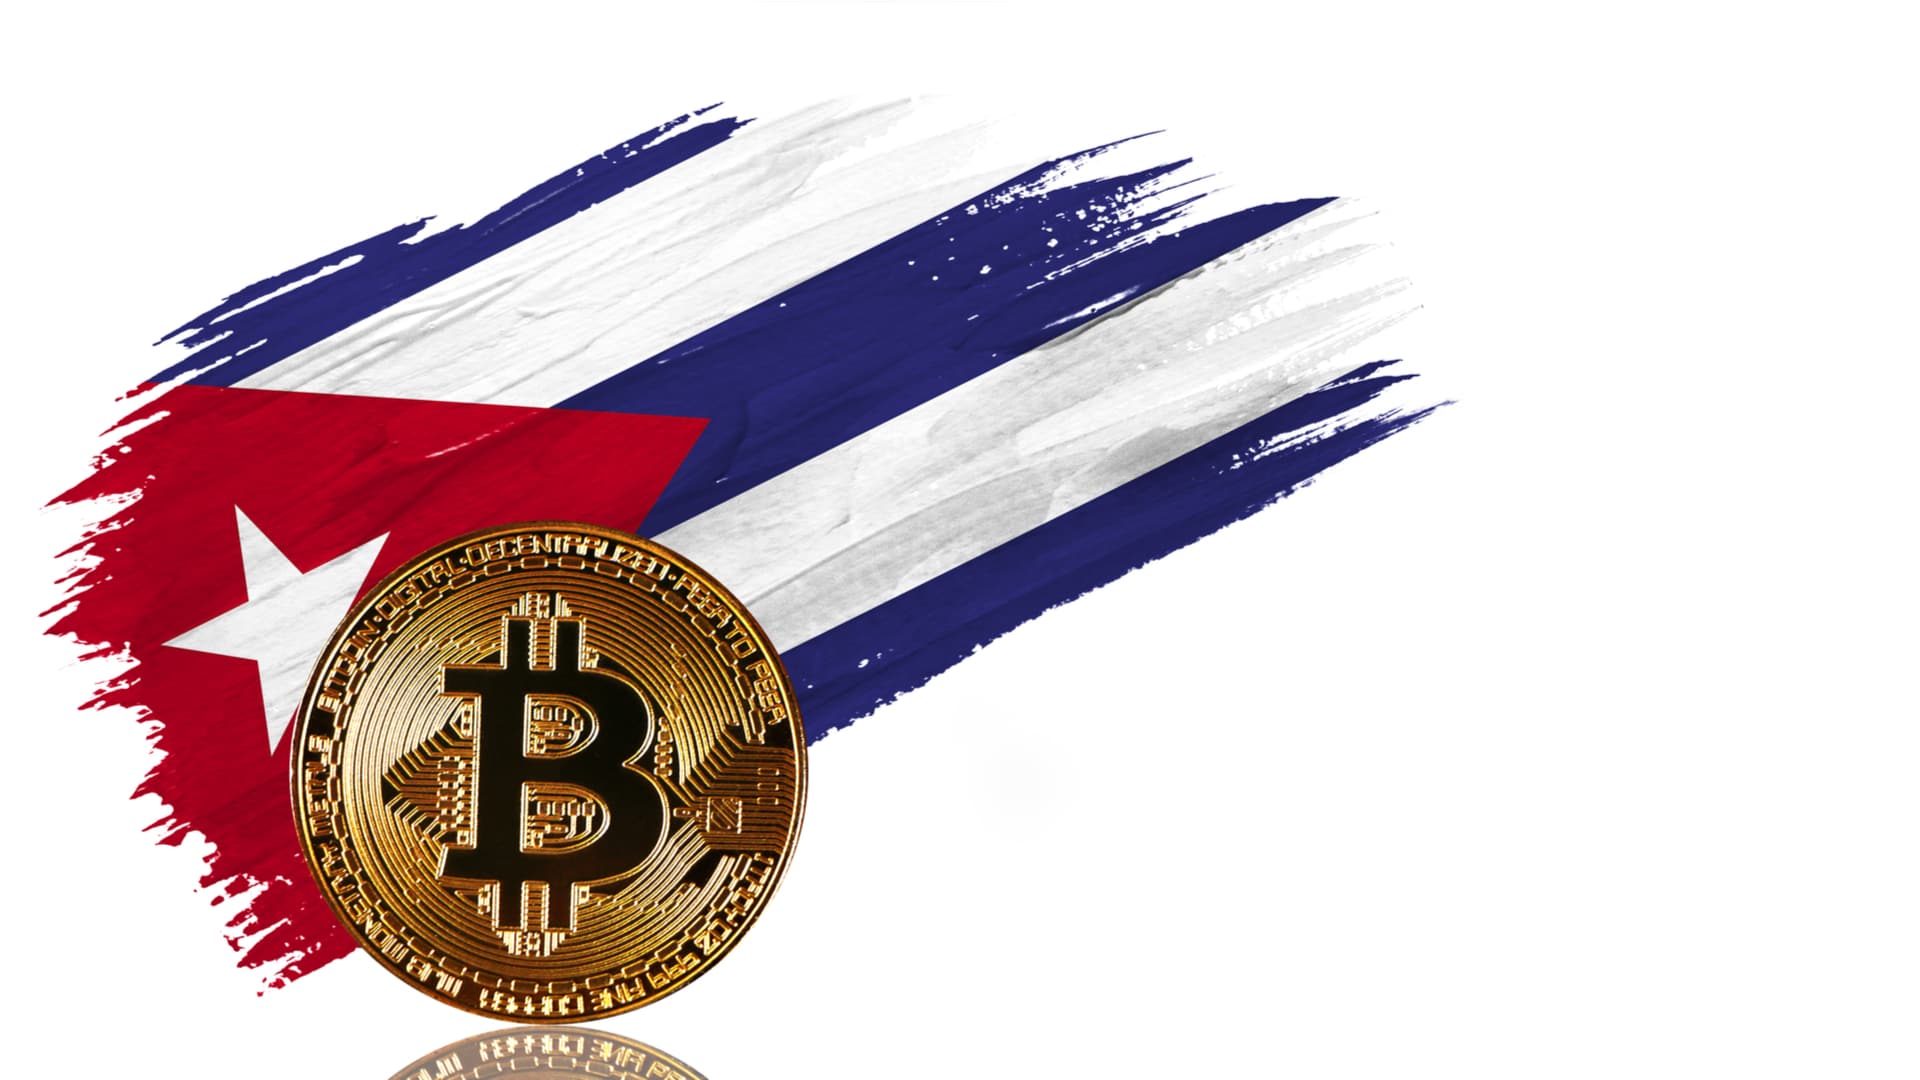 Cuba til at anerkende og regulere Bitcoin for betalinger